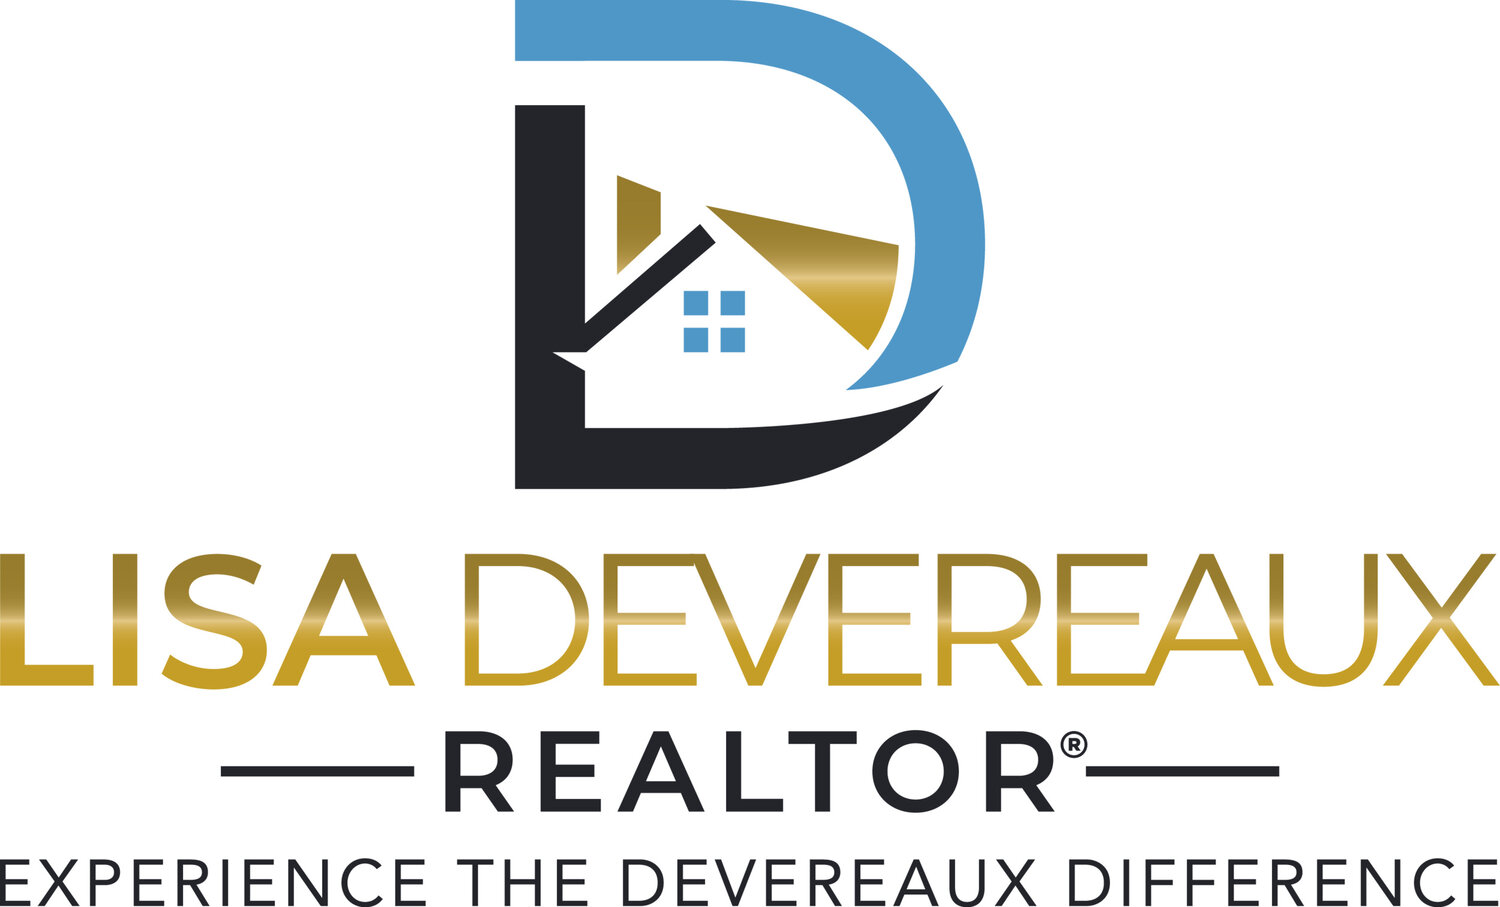 Lisa Devereaux Real Estate